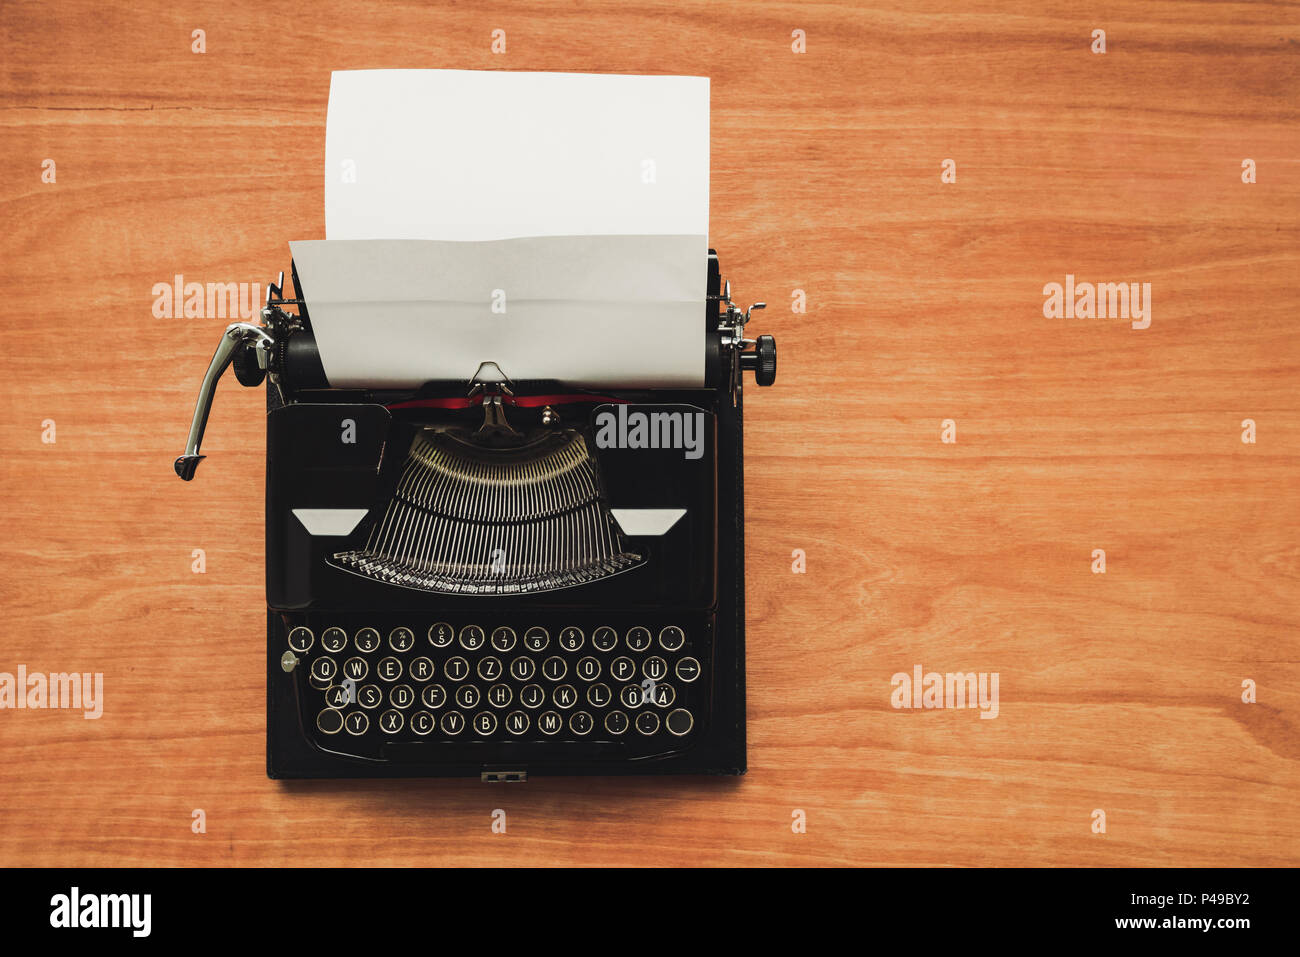 Vintage macchina macchina da scrivere su scrittori, desk top view flat laici immagine concettuale per il blogging, pubblicazione, il giornalismo o la poesia scritta. Foto Stock